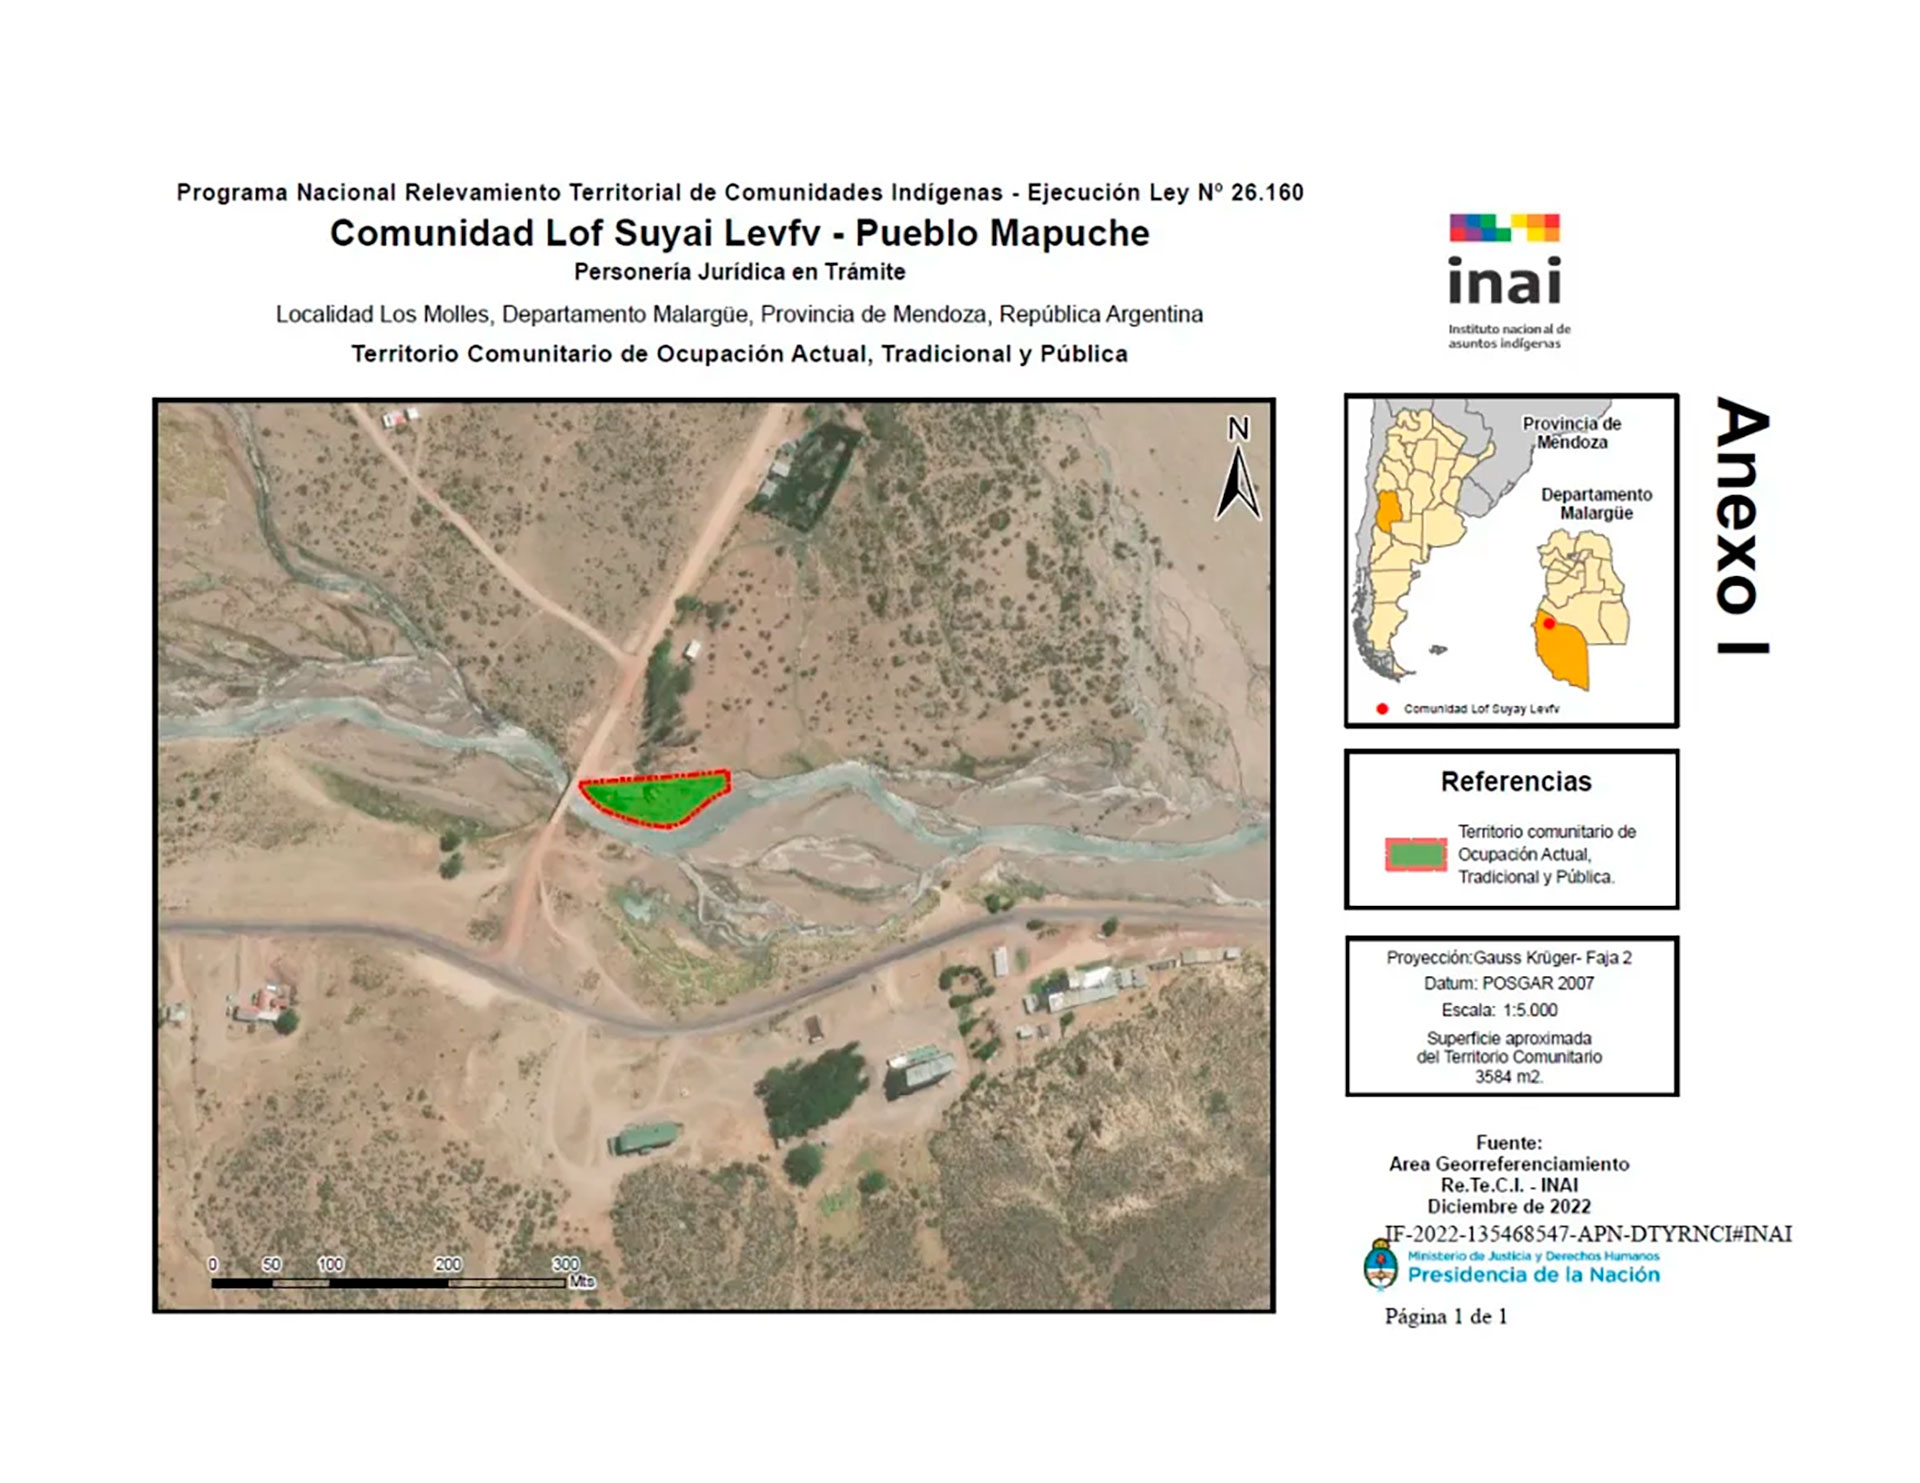 El mapa de las tierras cedidas a la comunidad Suyai Levfu, que también tiene su personería jurídica en trámite